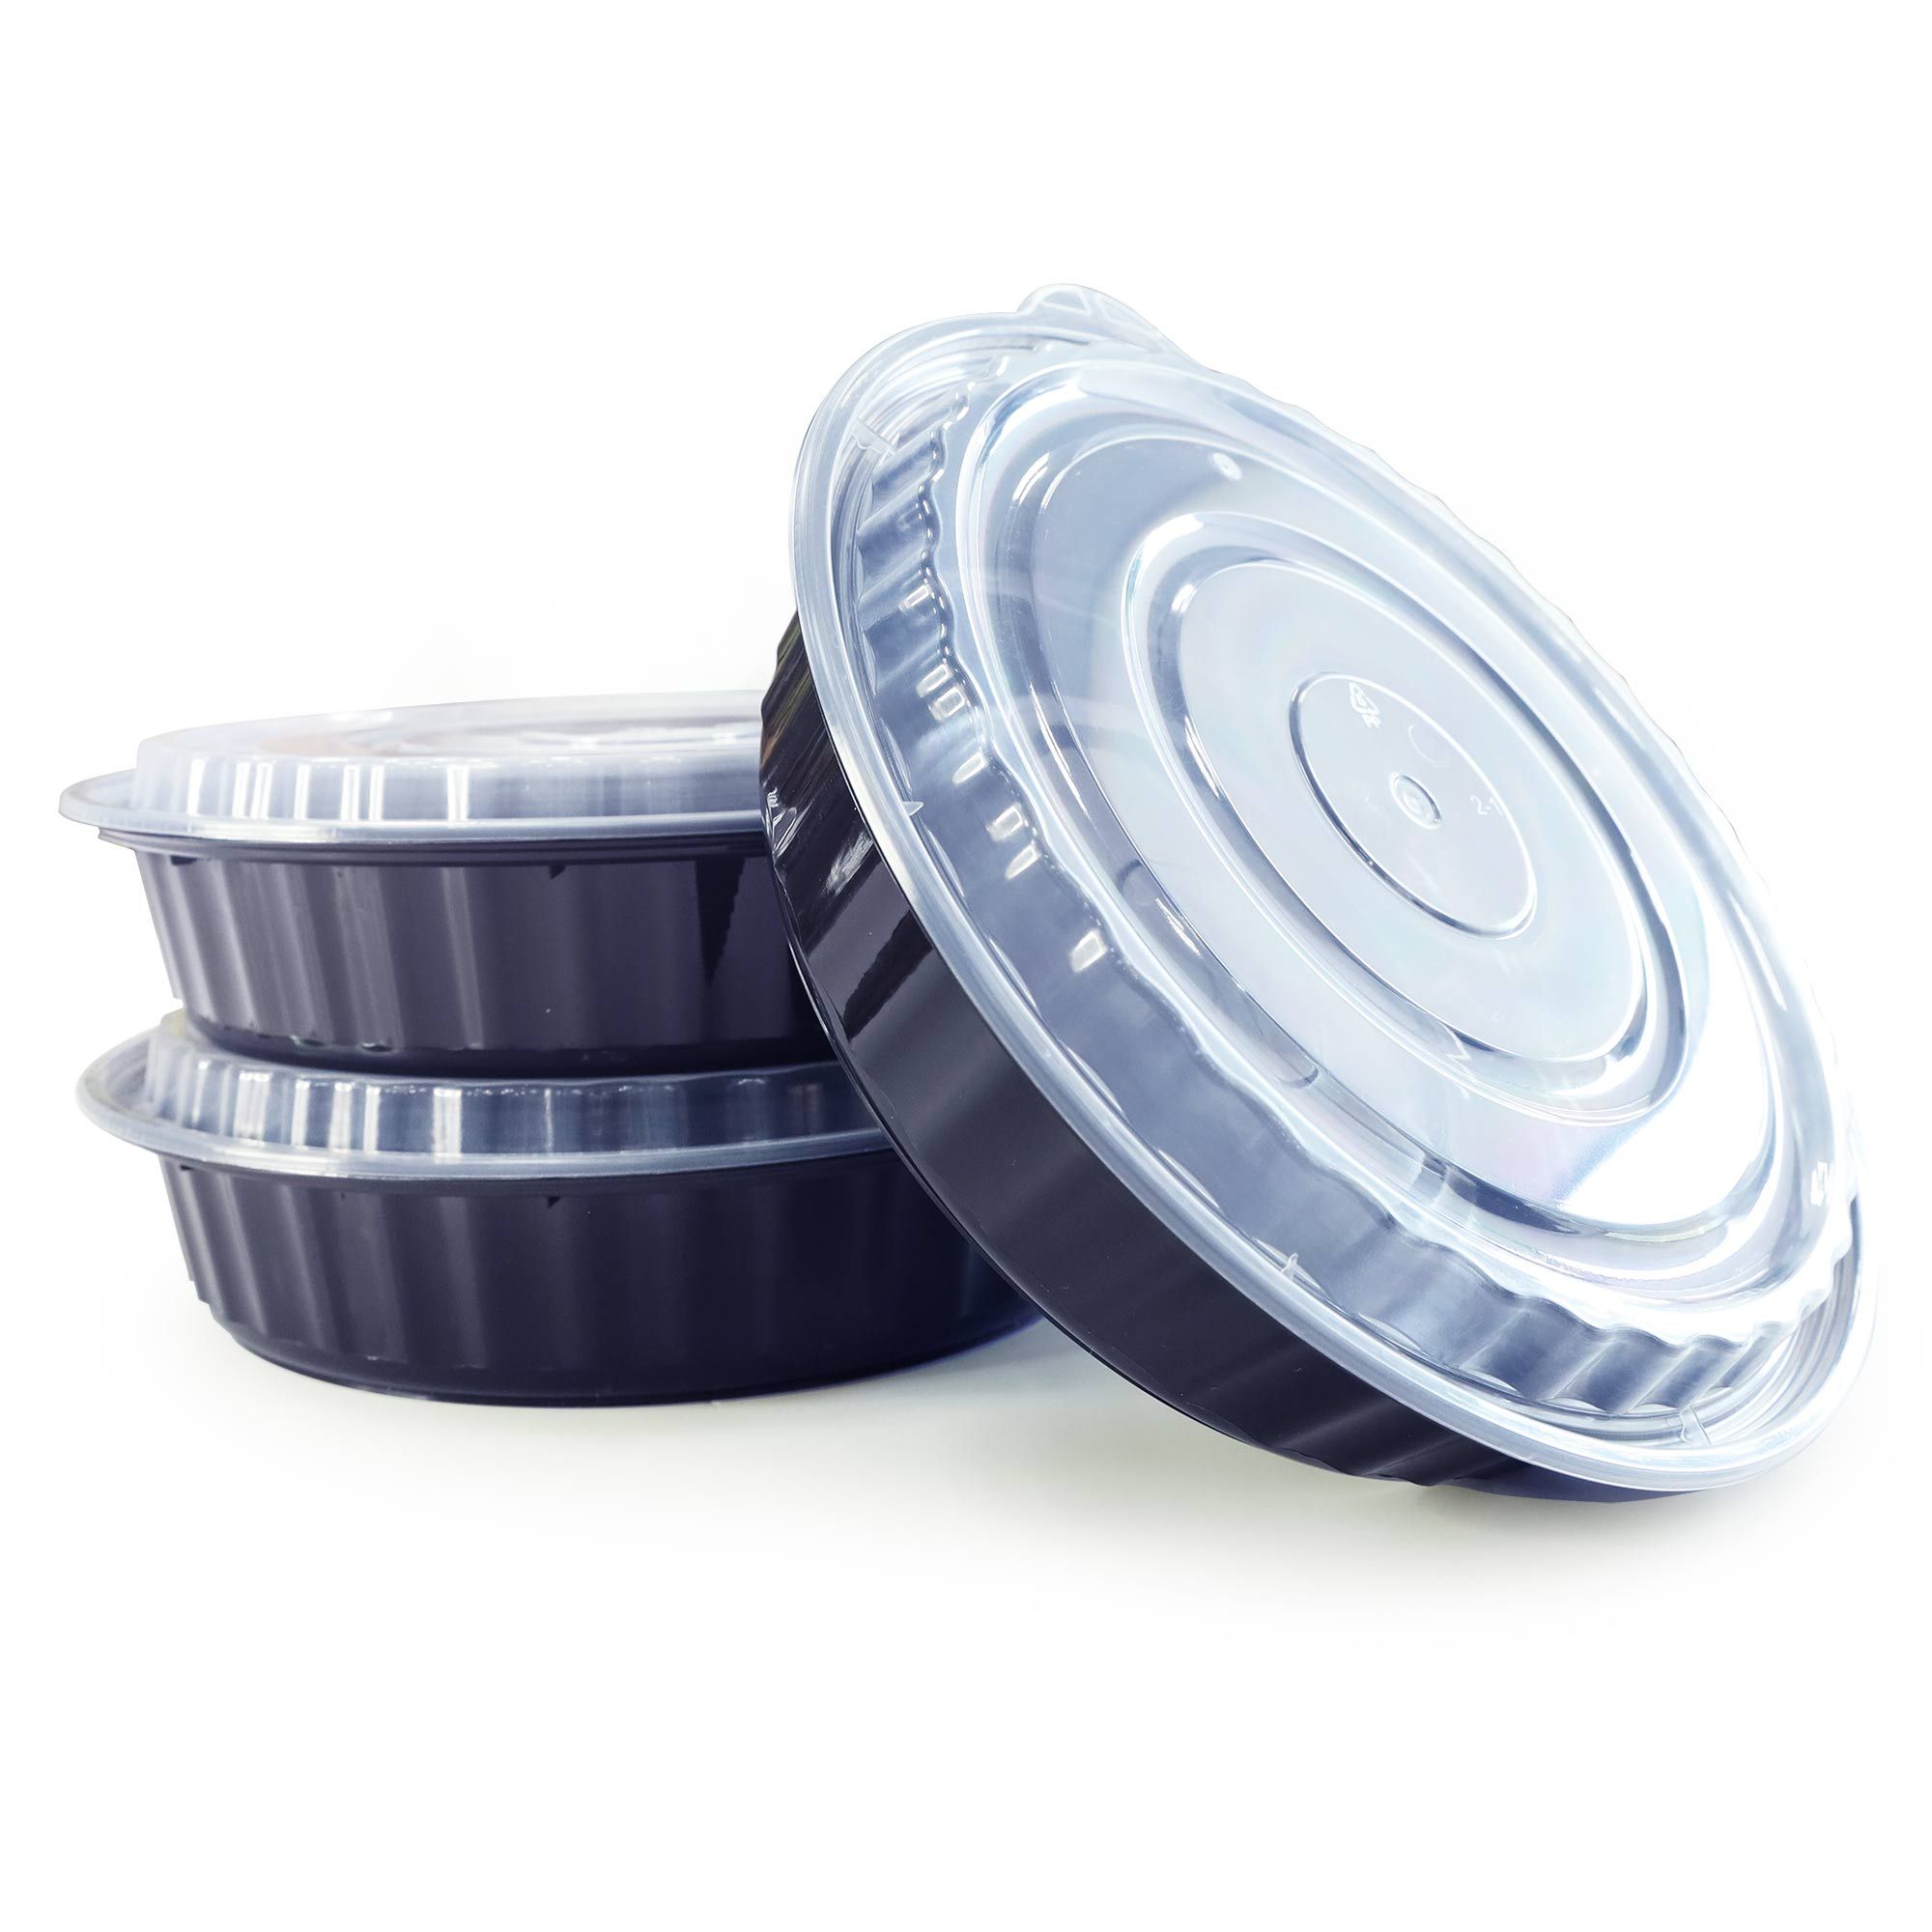 48オンスラウンドランチボックス 1440ml 台湾の高品質プラスチック使い捨て食器そしてカスタマイズプラスチック製品メーカー 苔曙企業股份有限公司